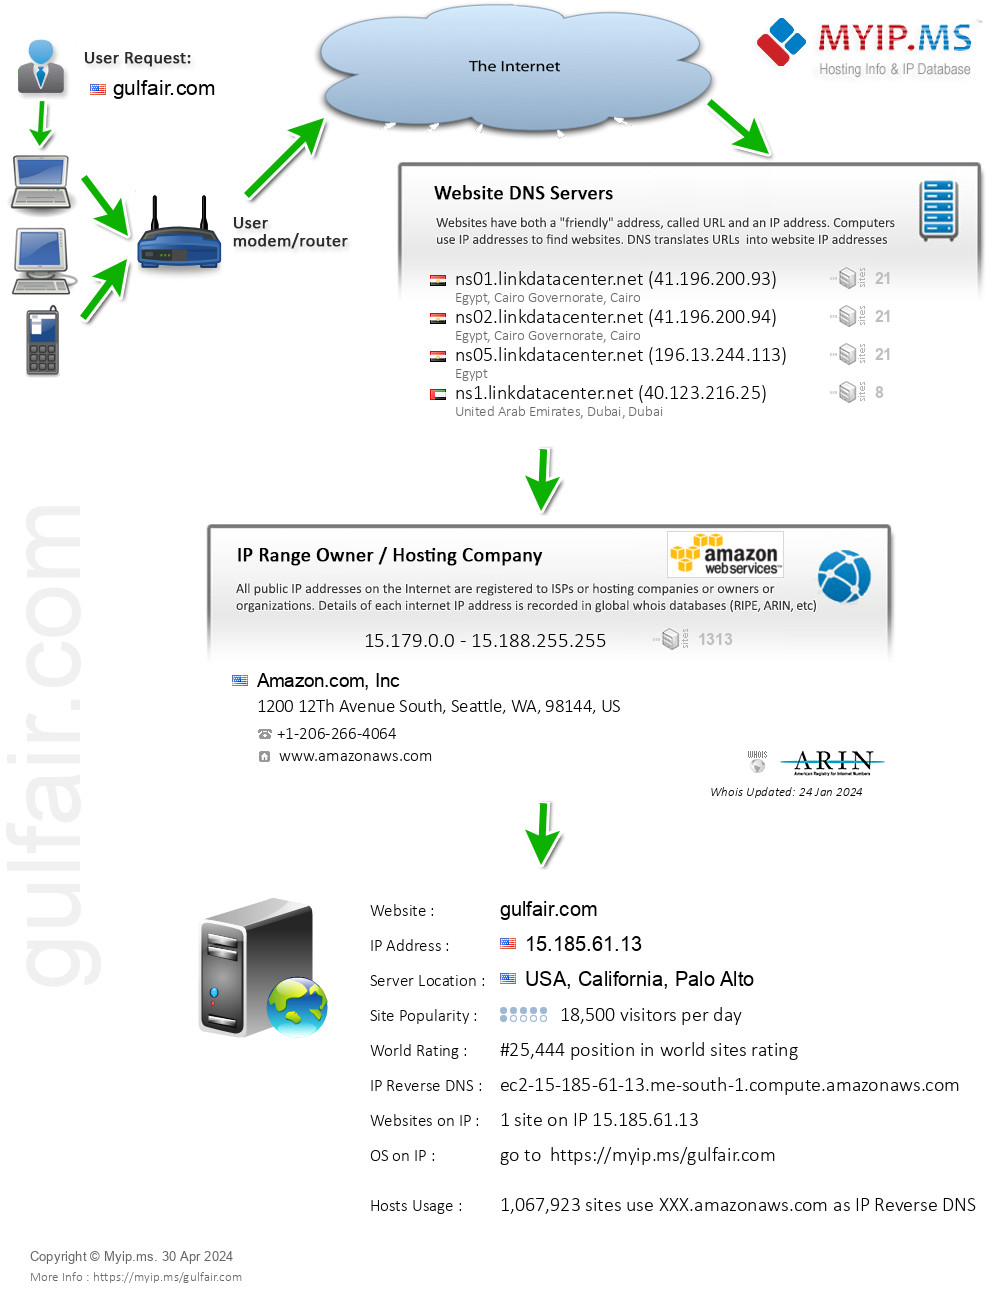 Gulfair.com - Website Hosting Visual IP Diagram